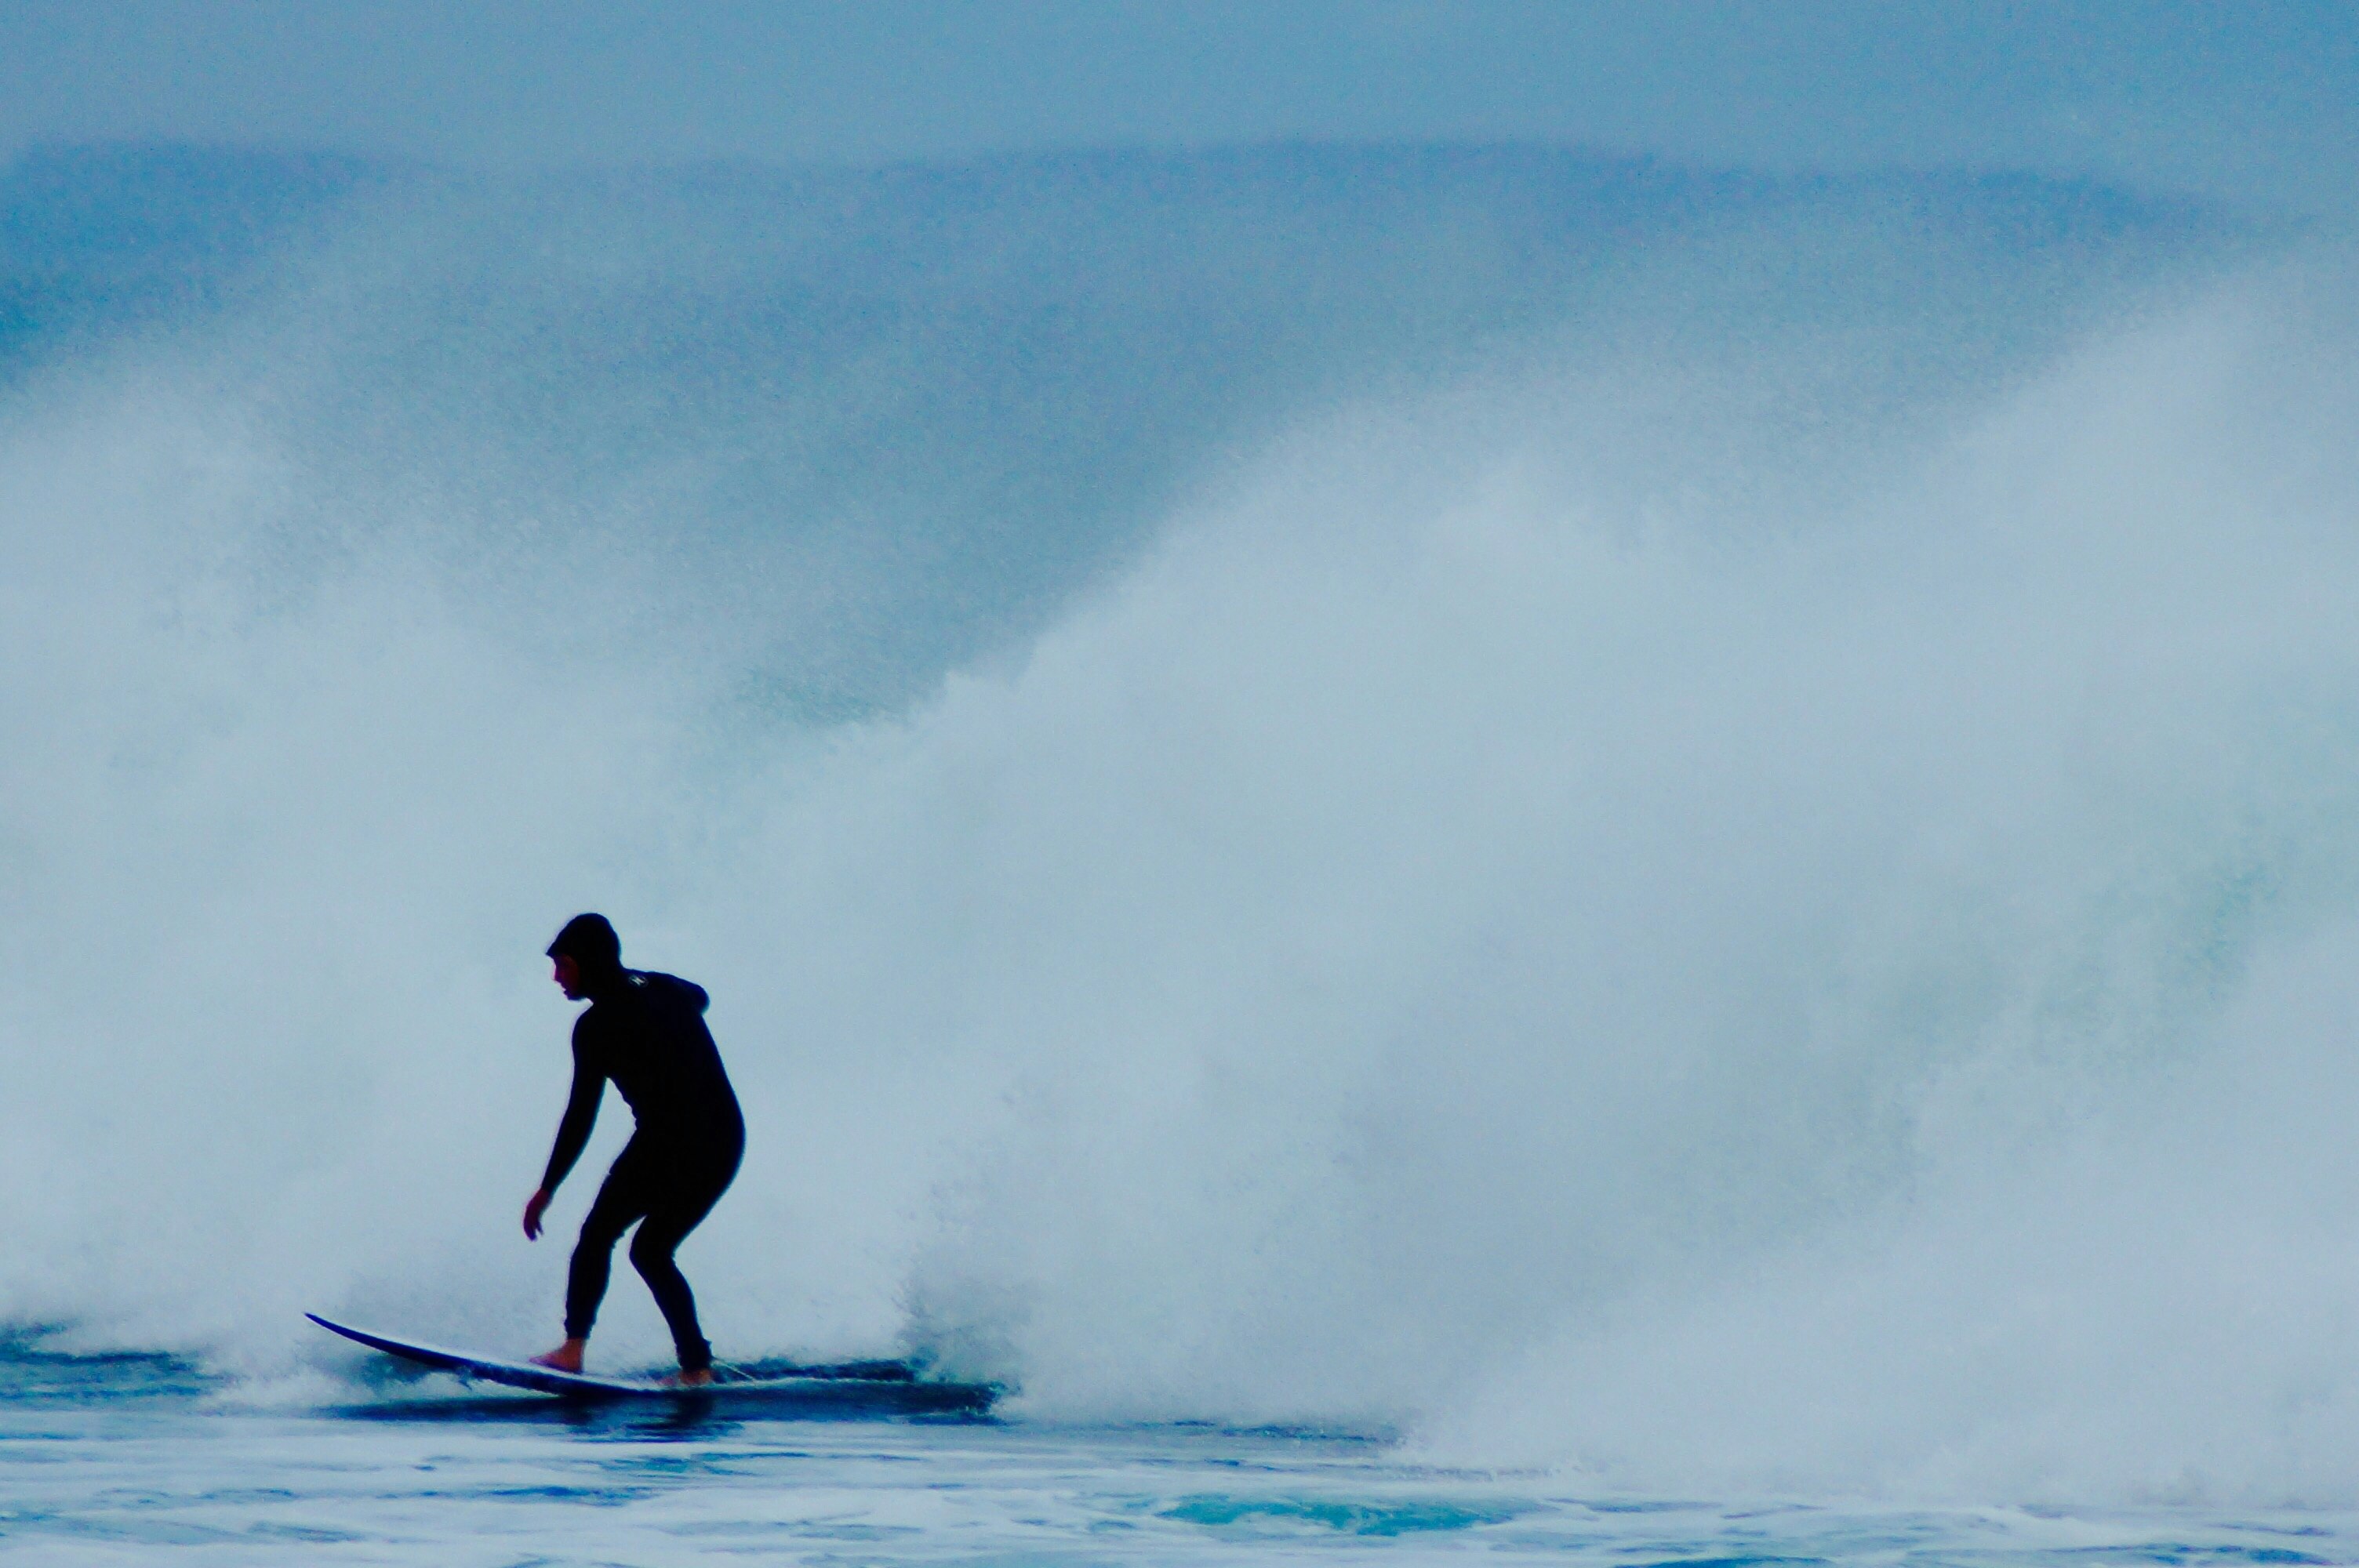 man riding surfboard near wave